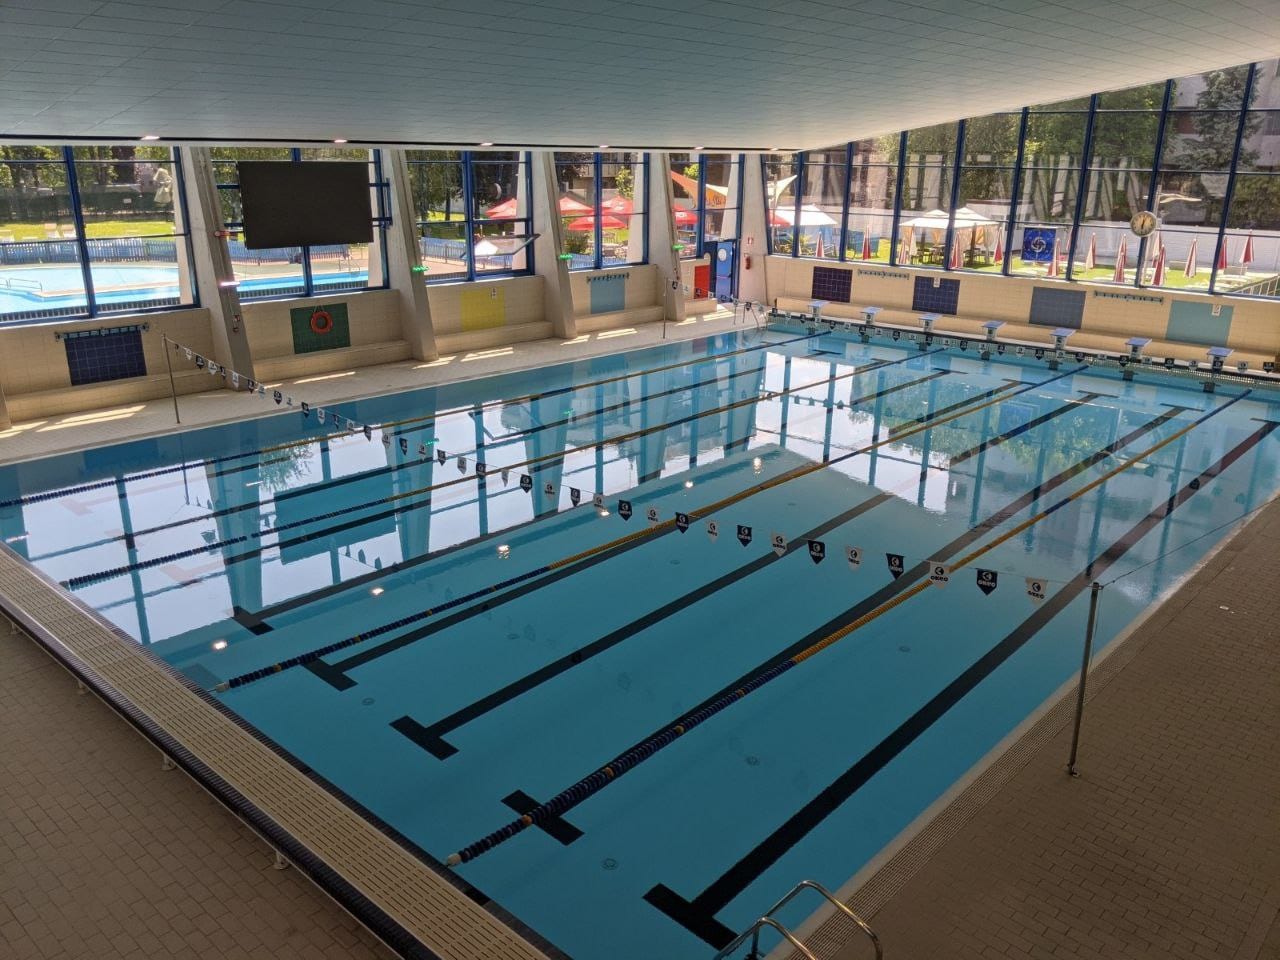 A Saronno torna “Sport si può” con i corsi in piscina per gli alunni disabili